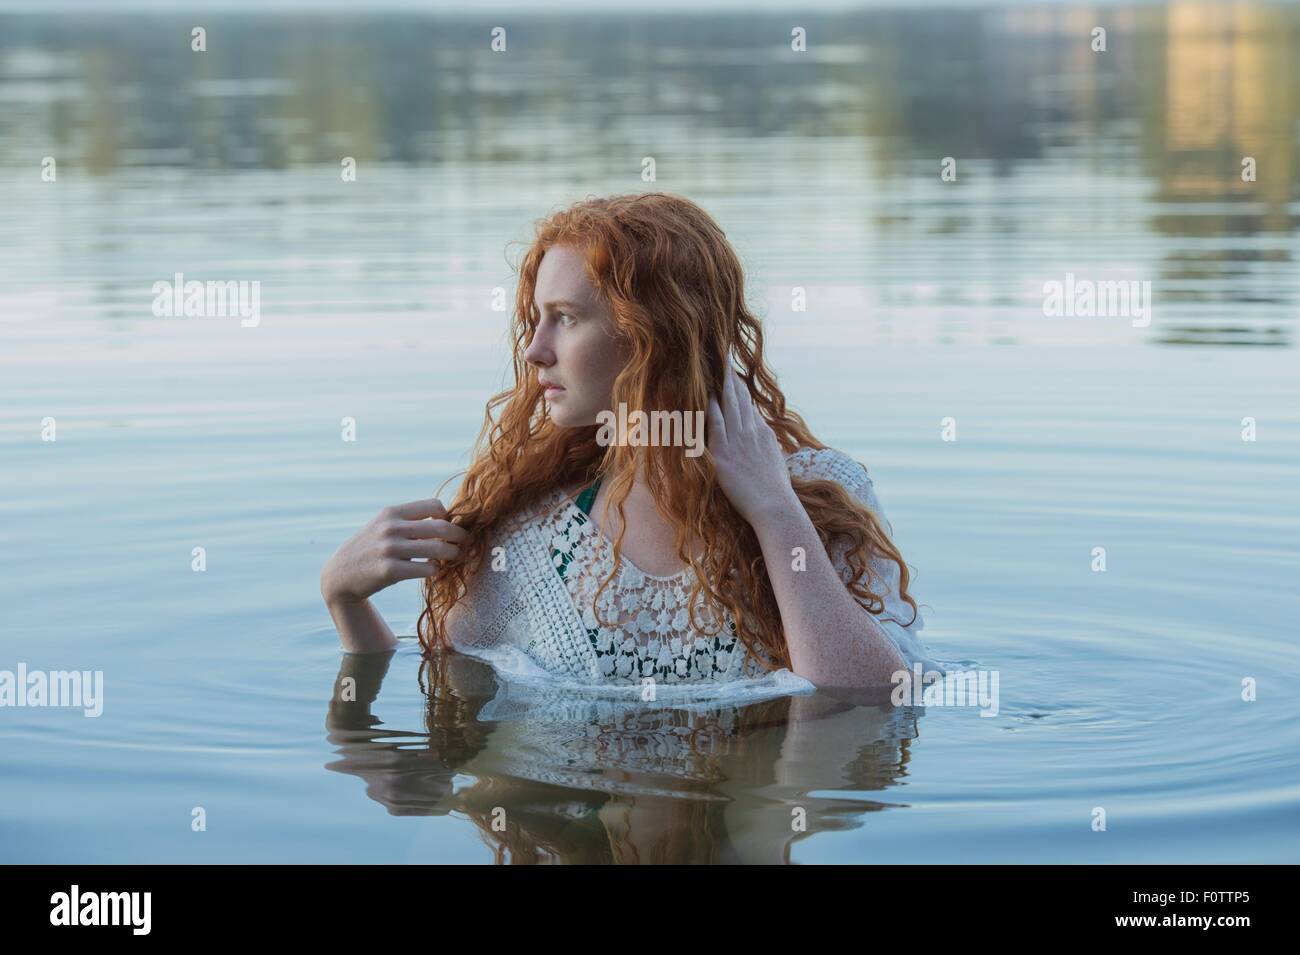 Kopf und Schultern der jungen Frau mit langen roten Haaren im See Blick seitwärts Stockfoto